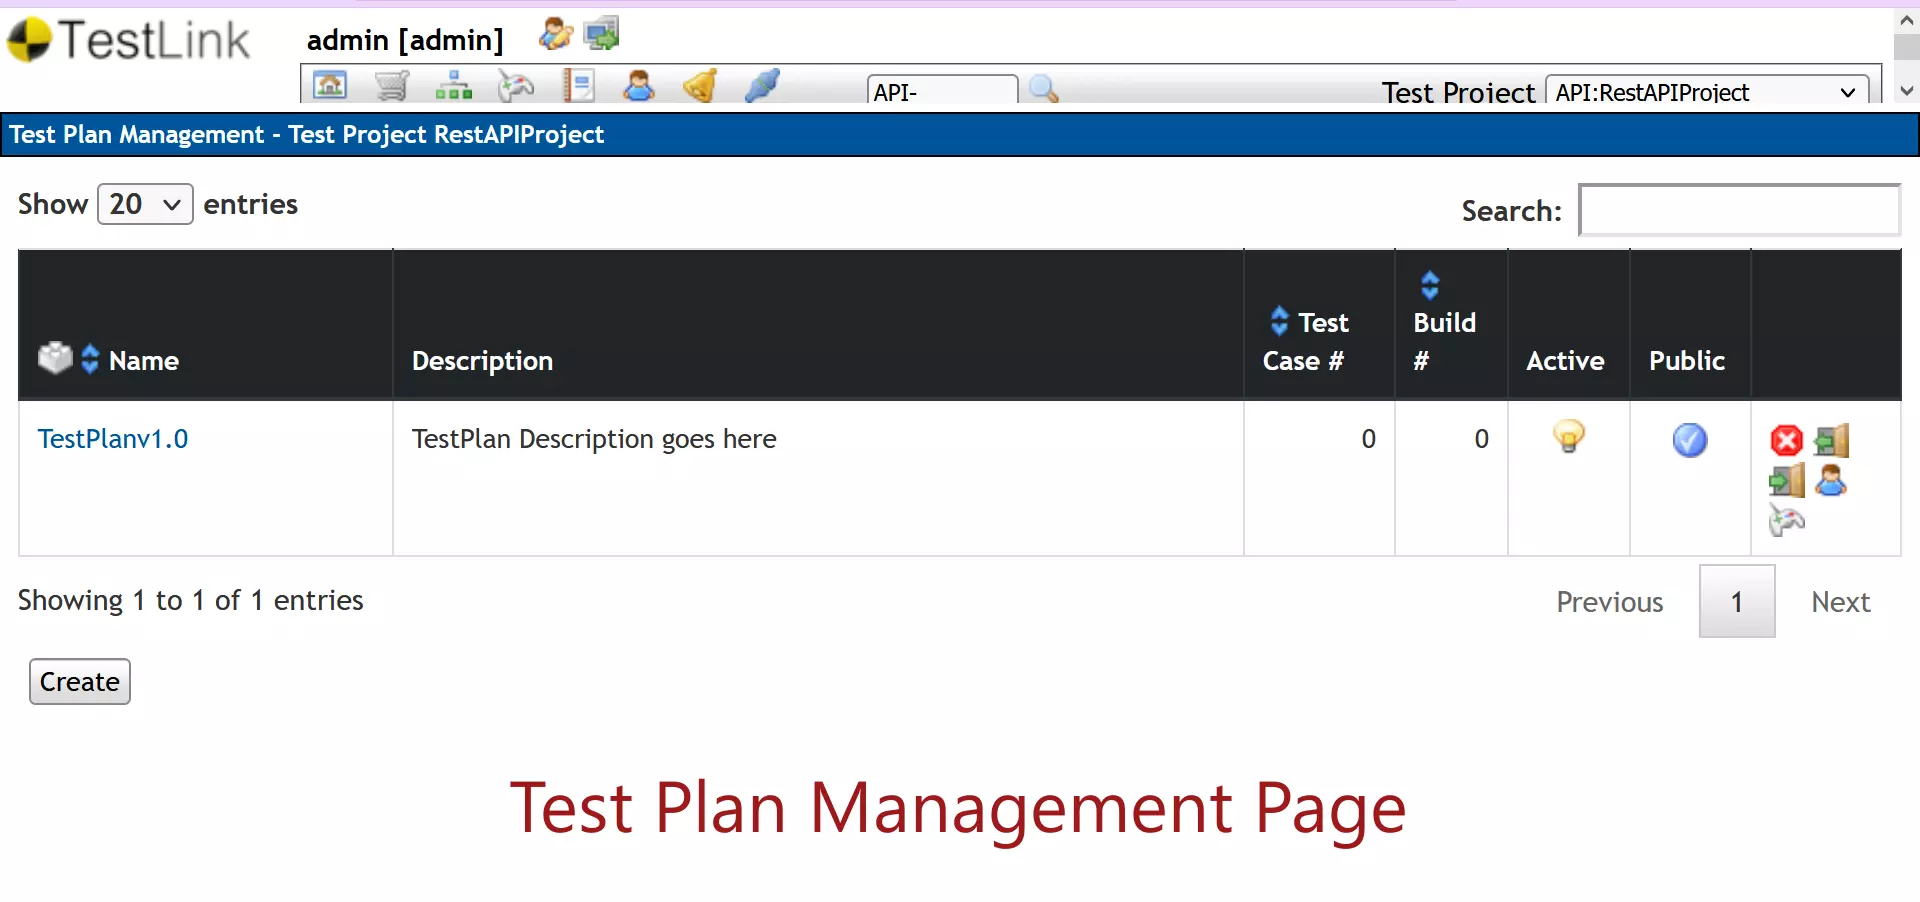 TestLink Test Plan Management Page